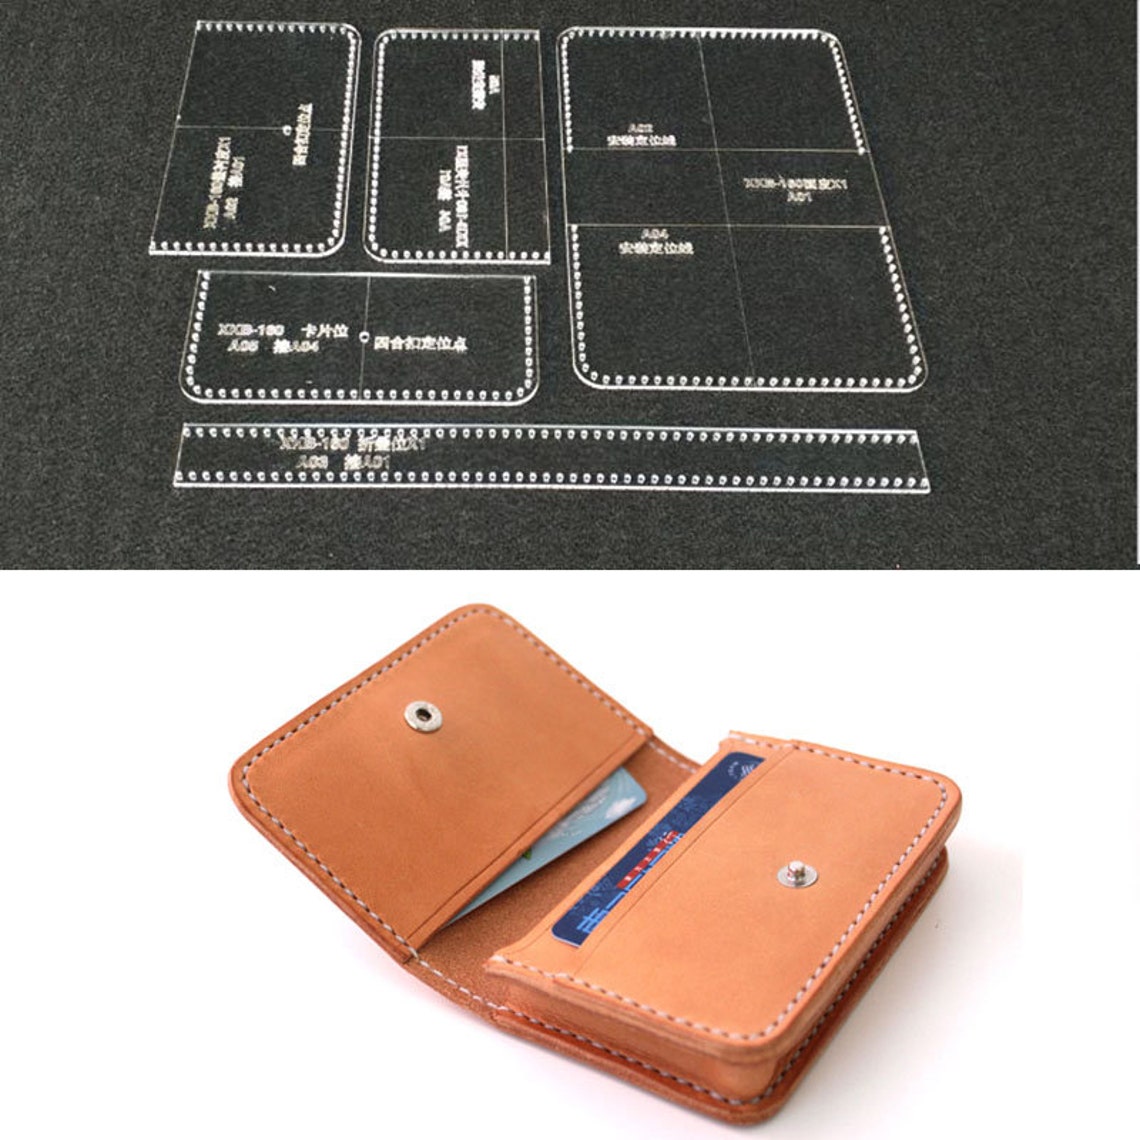 Leathercraft Card Holder Card Case Acrylic Leather Craft - Etsy